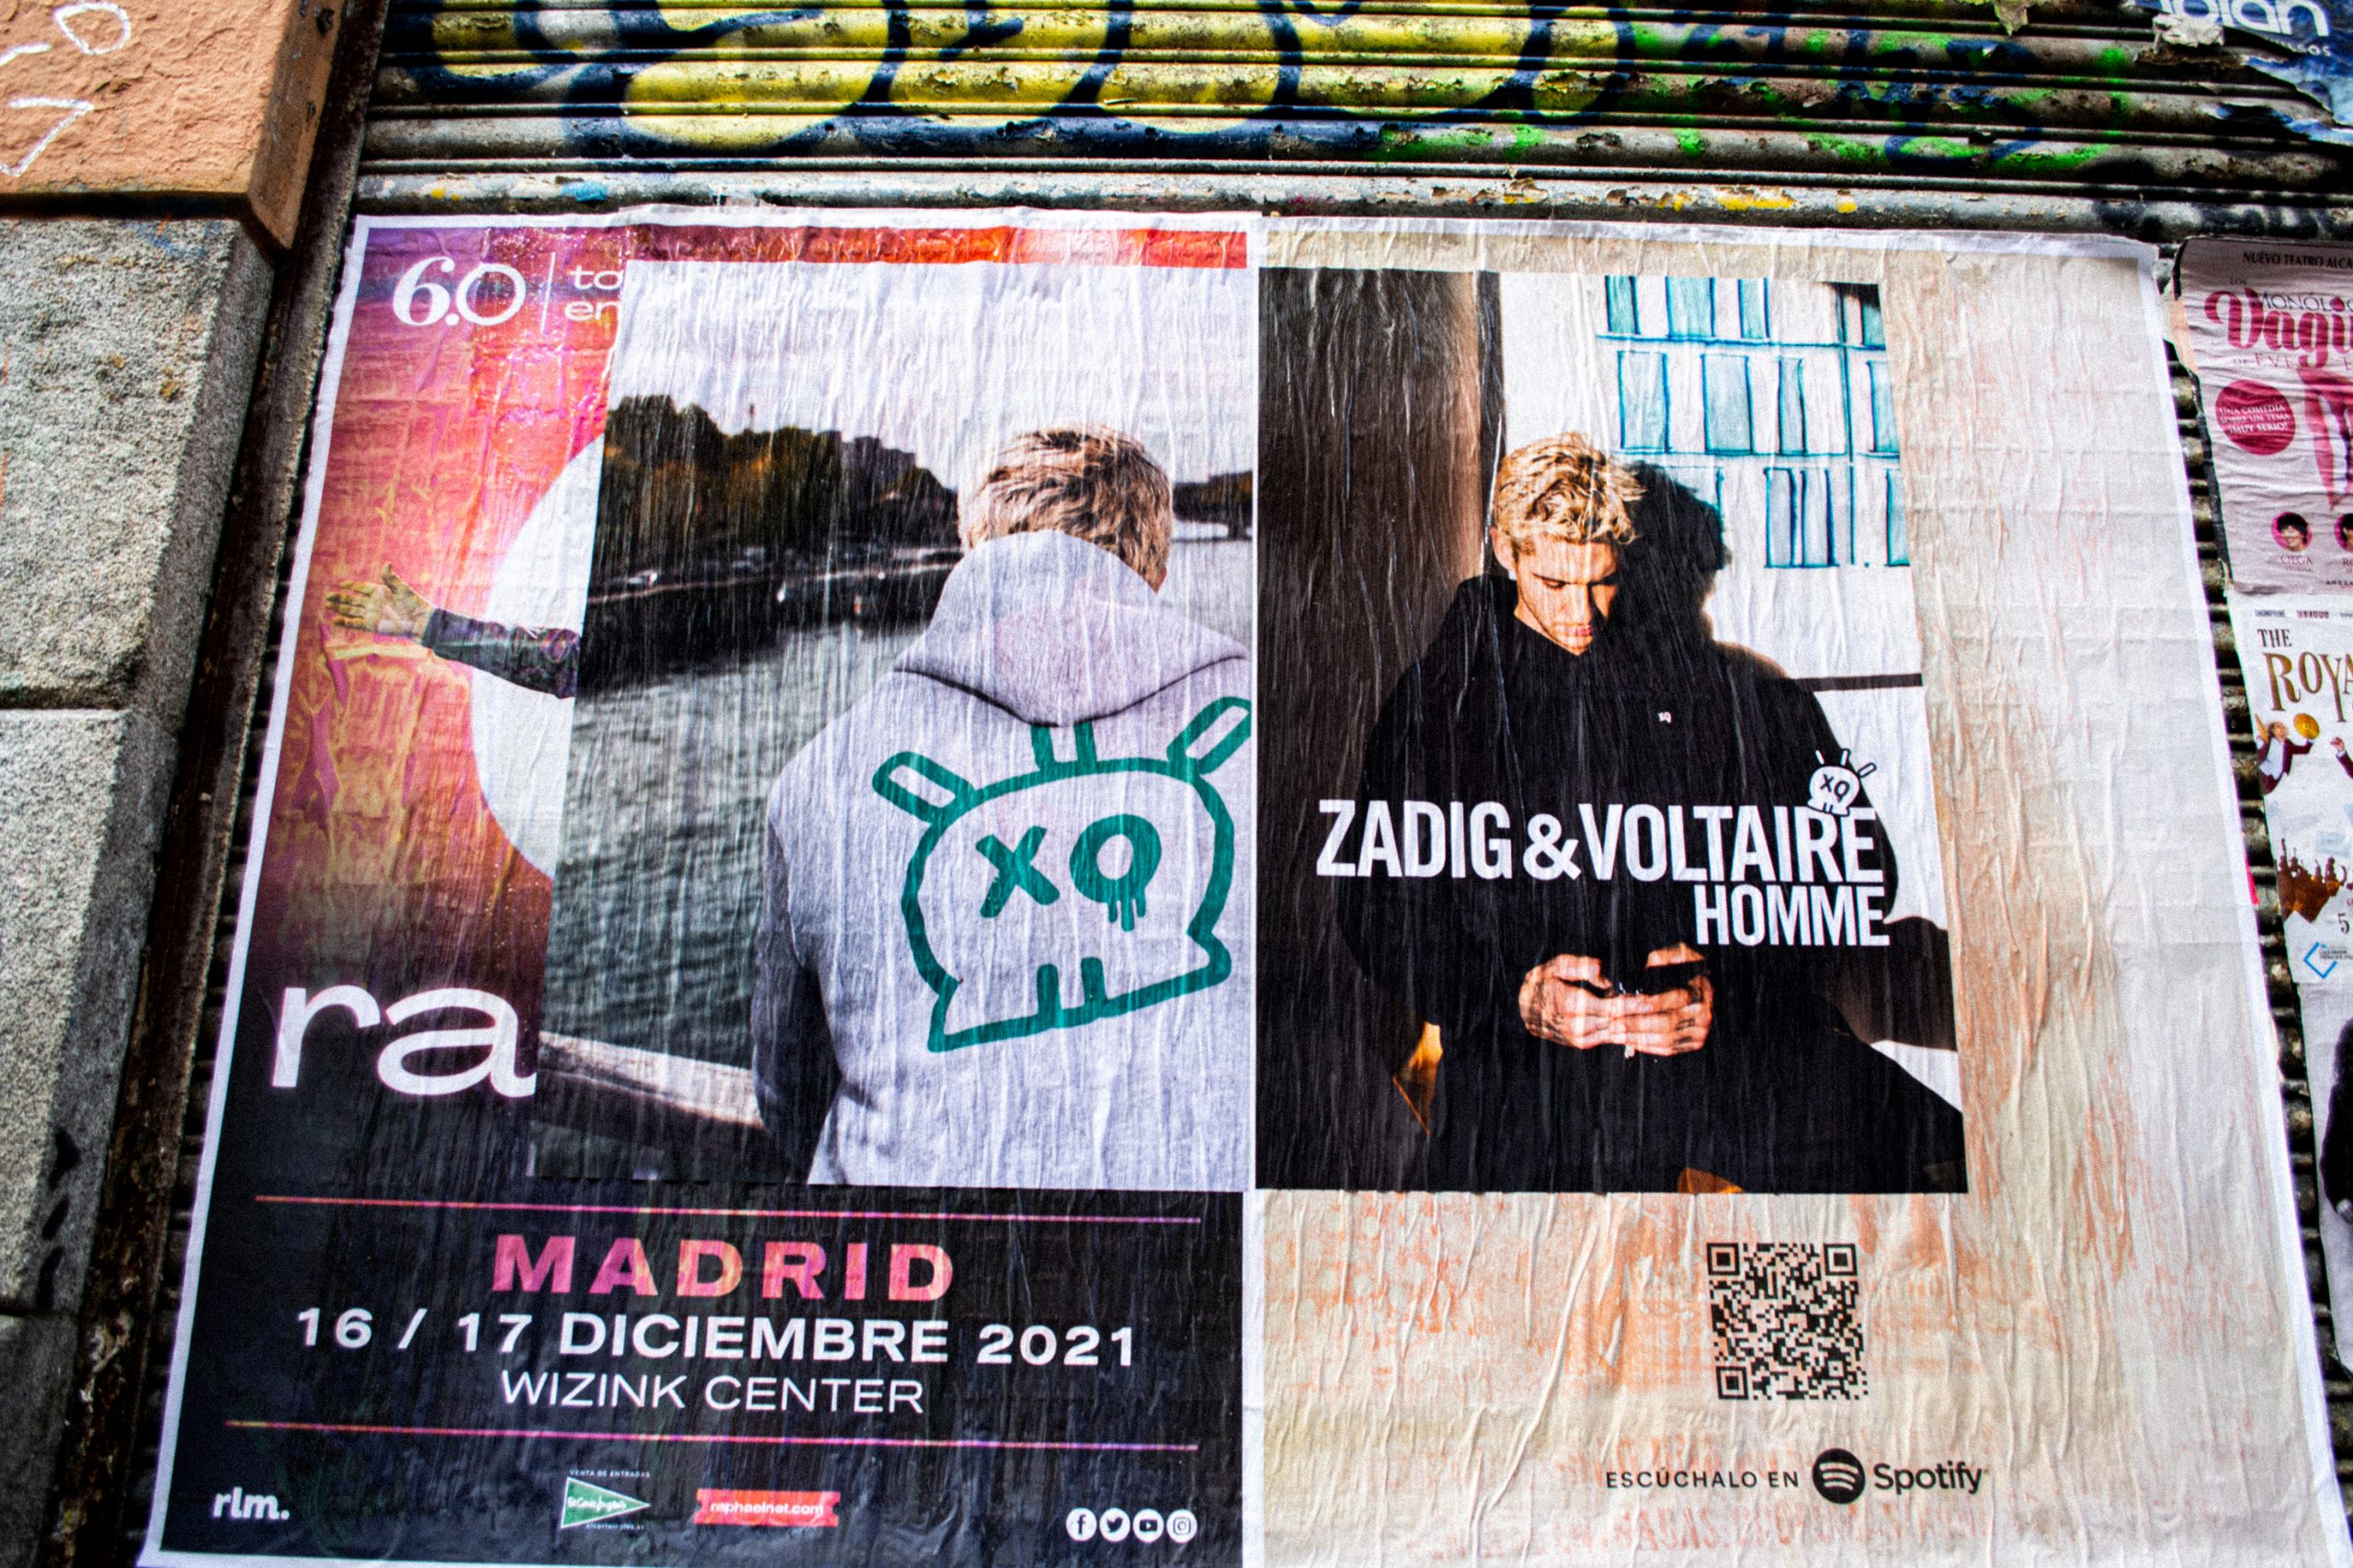 Mucha Calle, Expertos street marketing, pegada de carteles